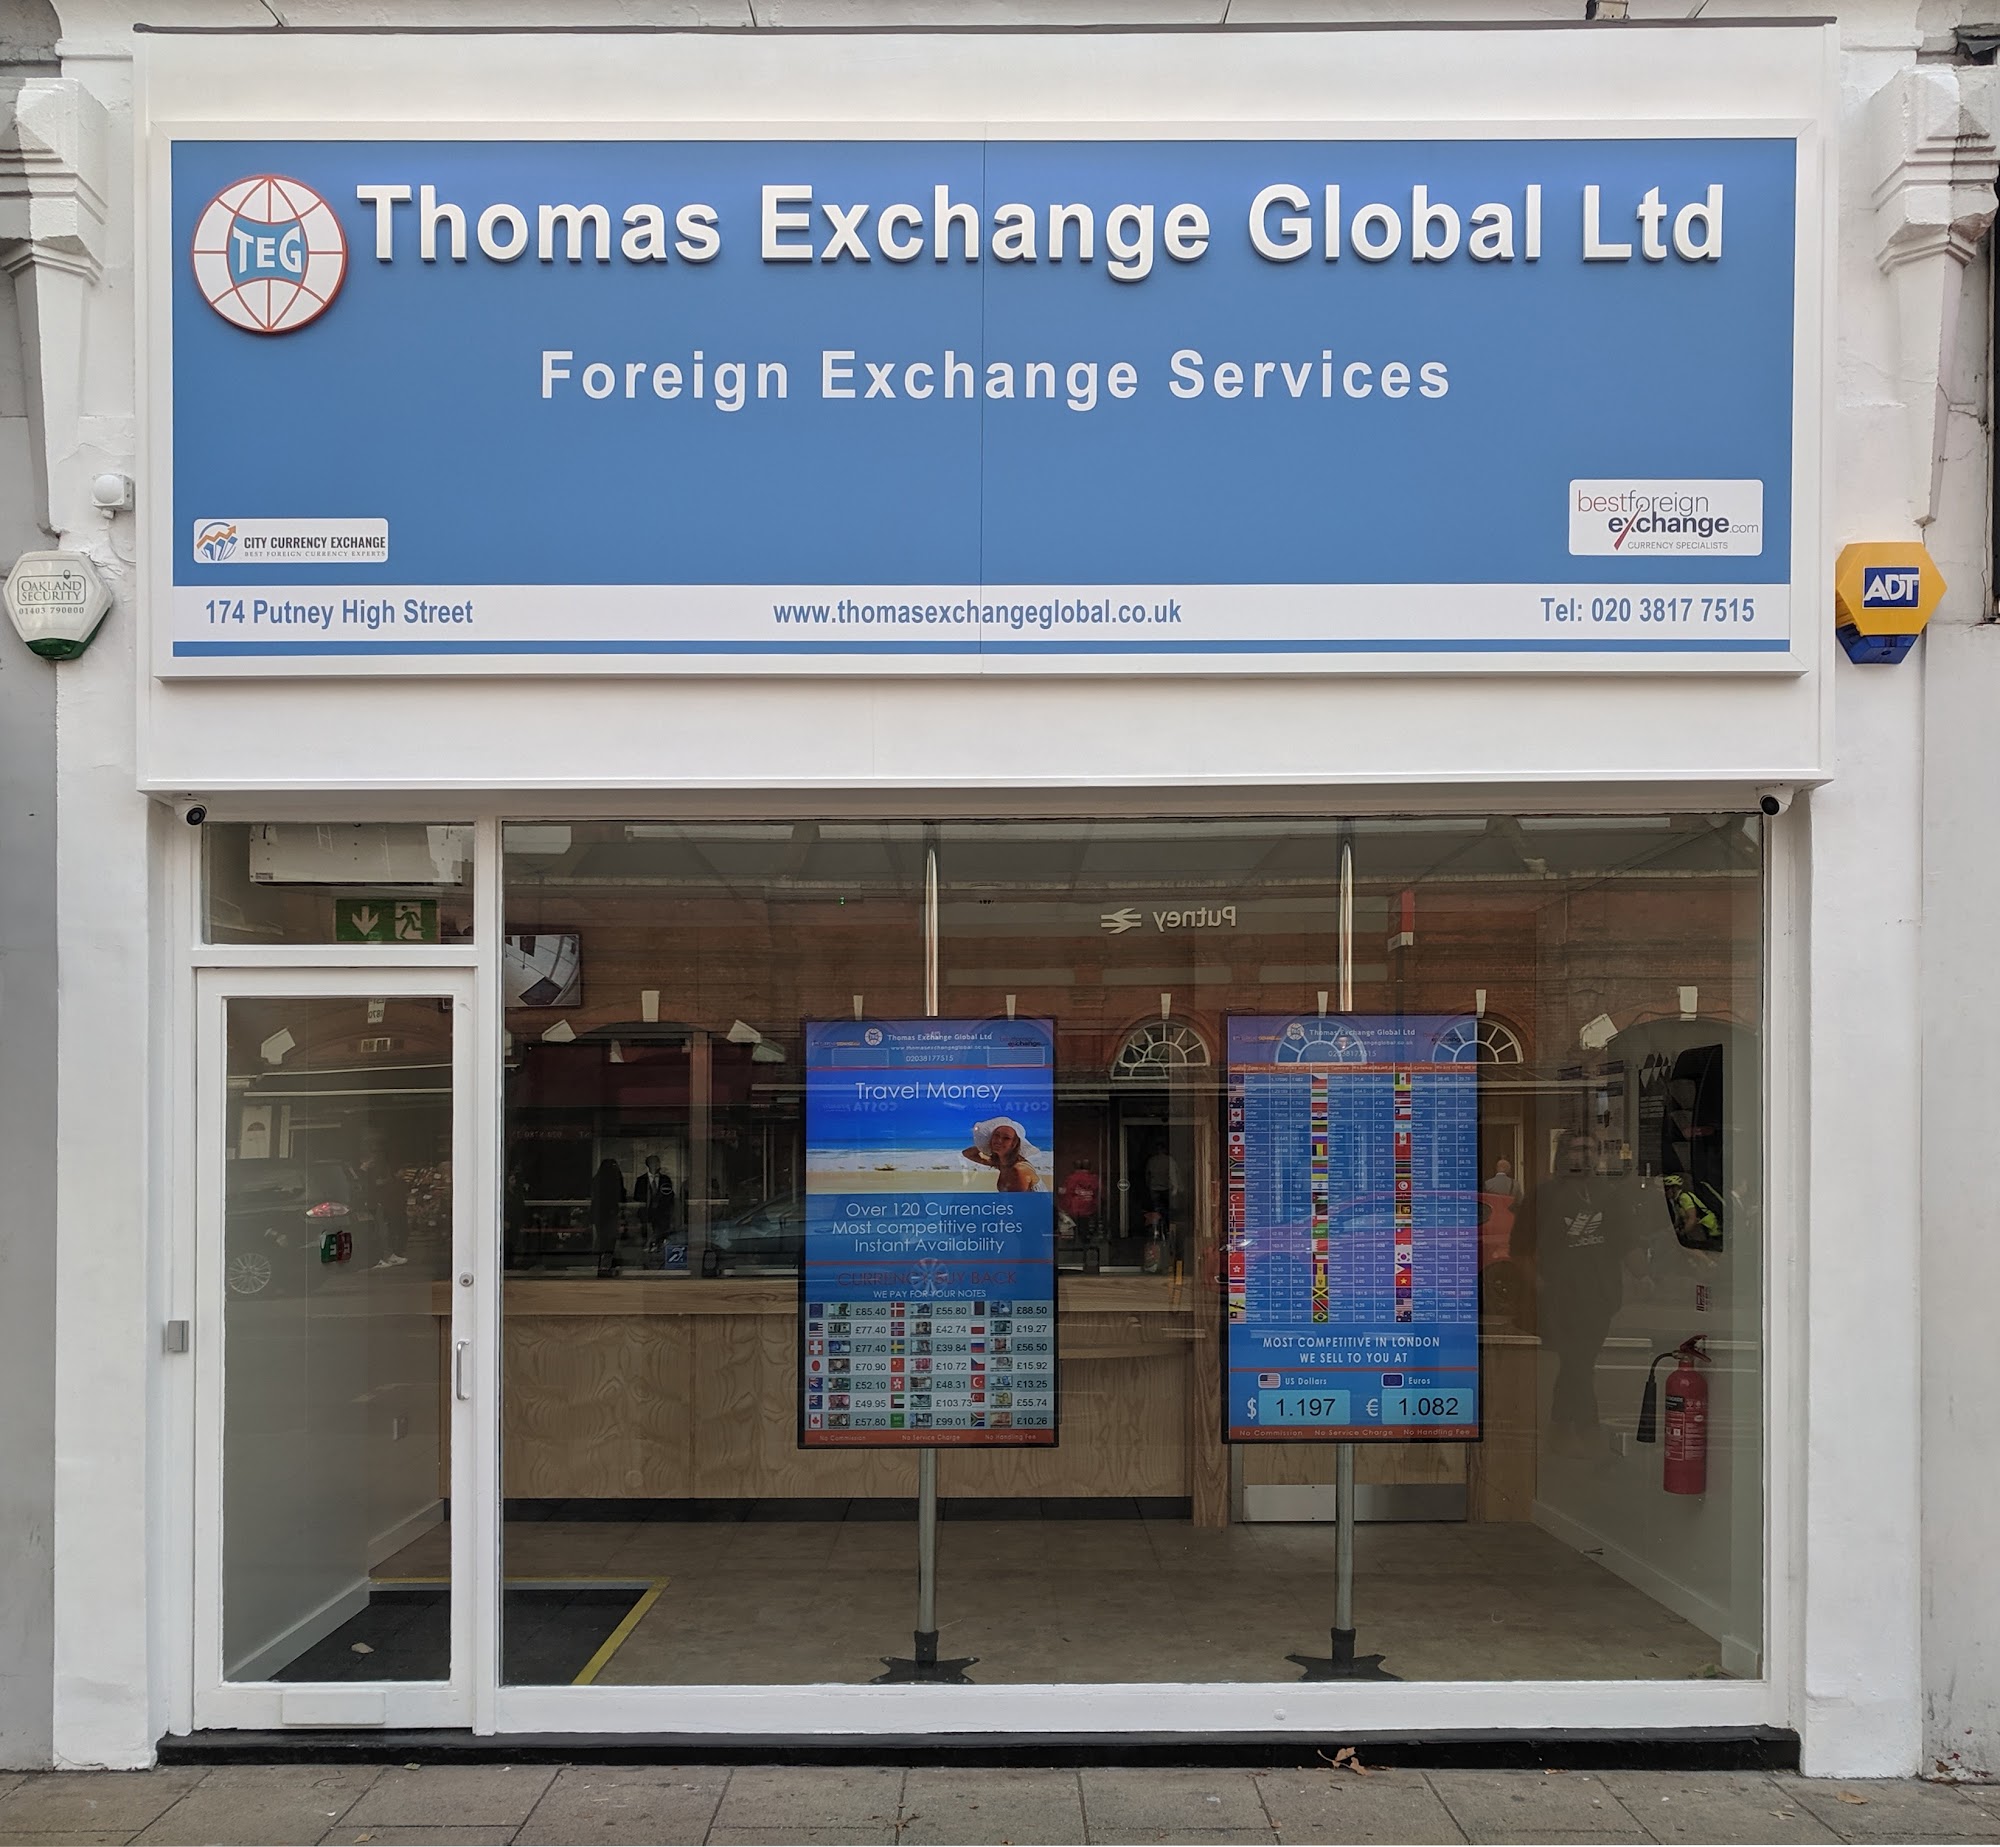 Thomas Exchange Global